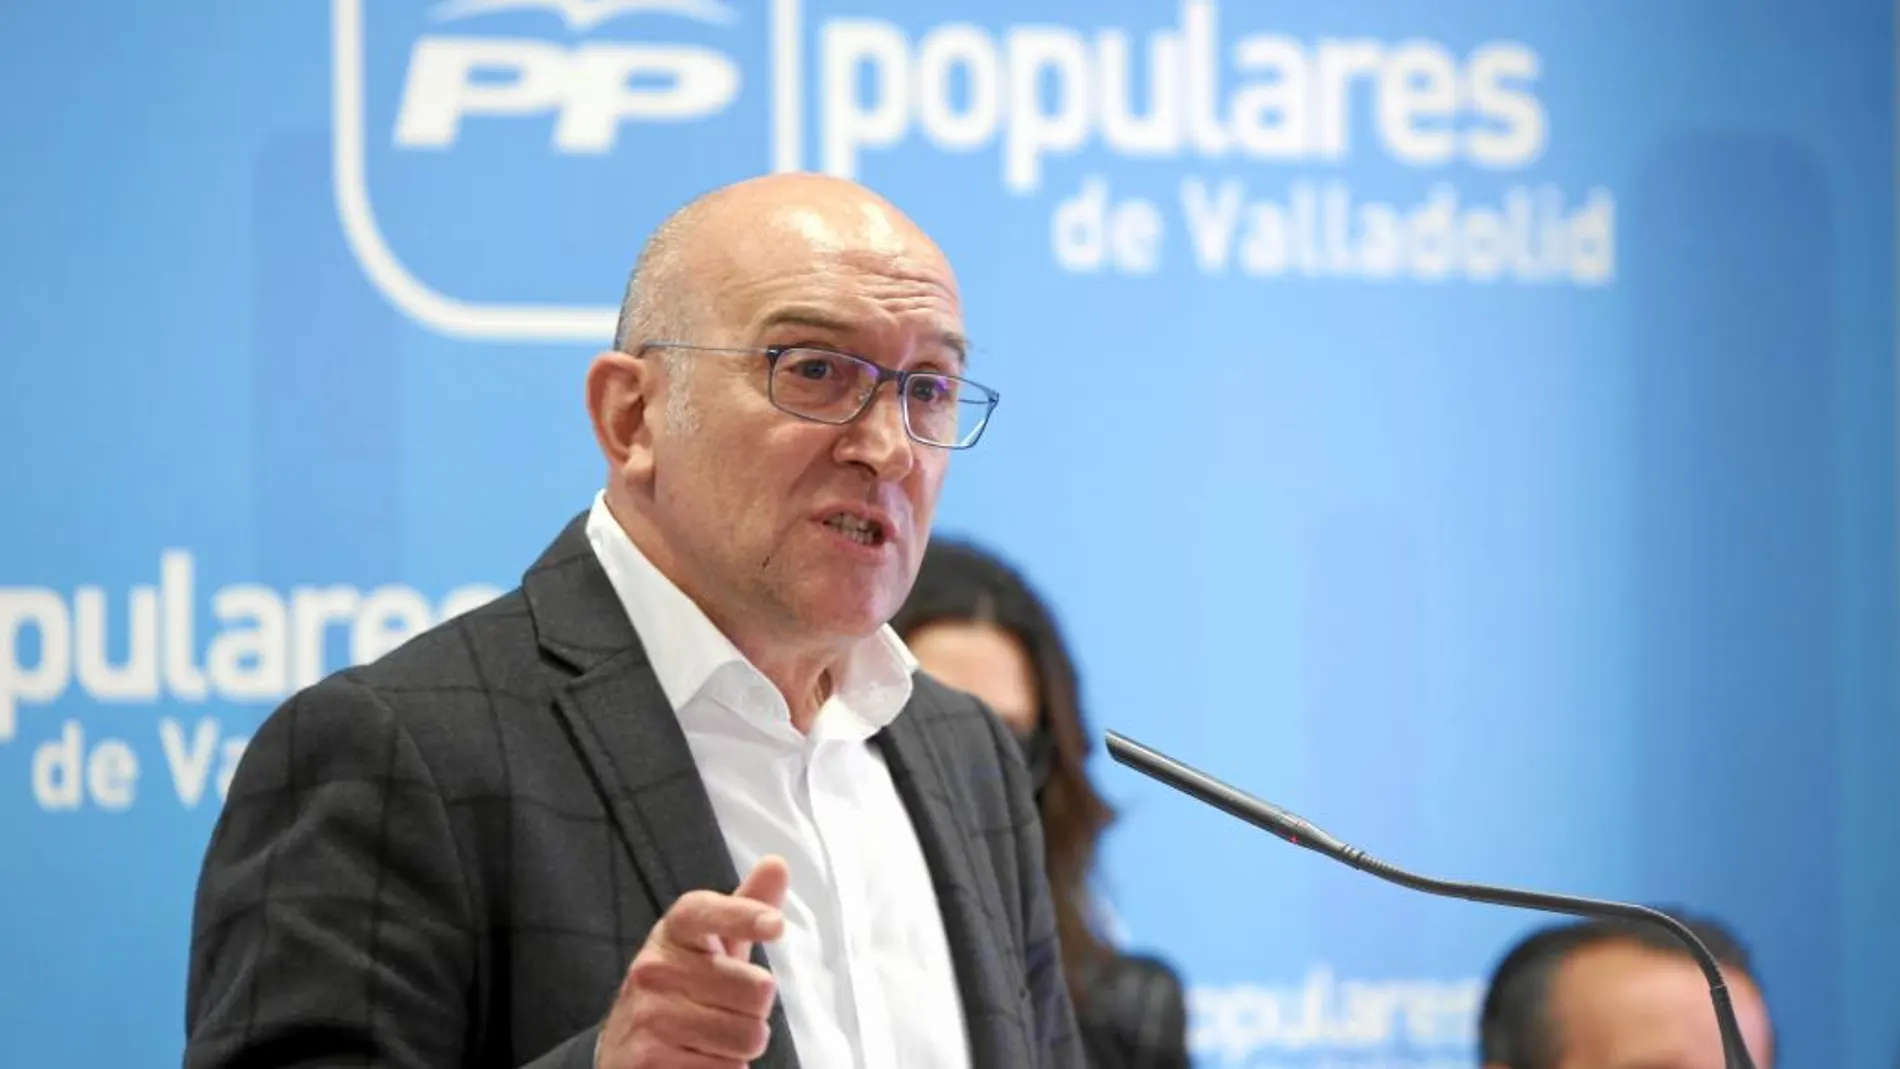 El candidato a presidir el PP de Valladolid, Jesús Julio Carnero, presenta las líneas básicas de su programa